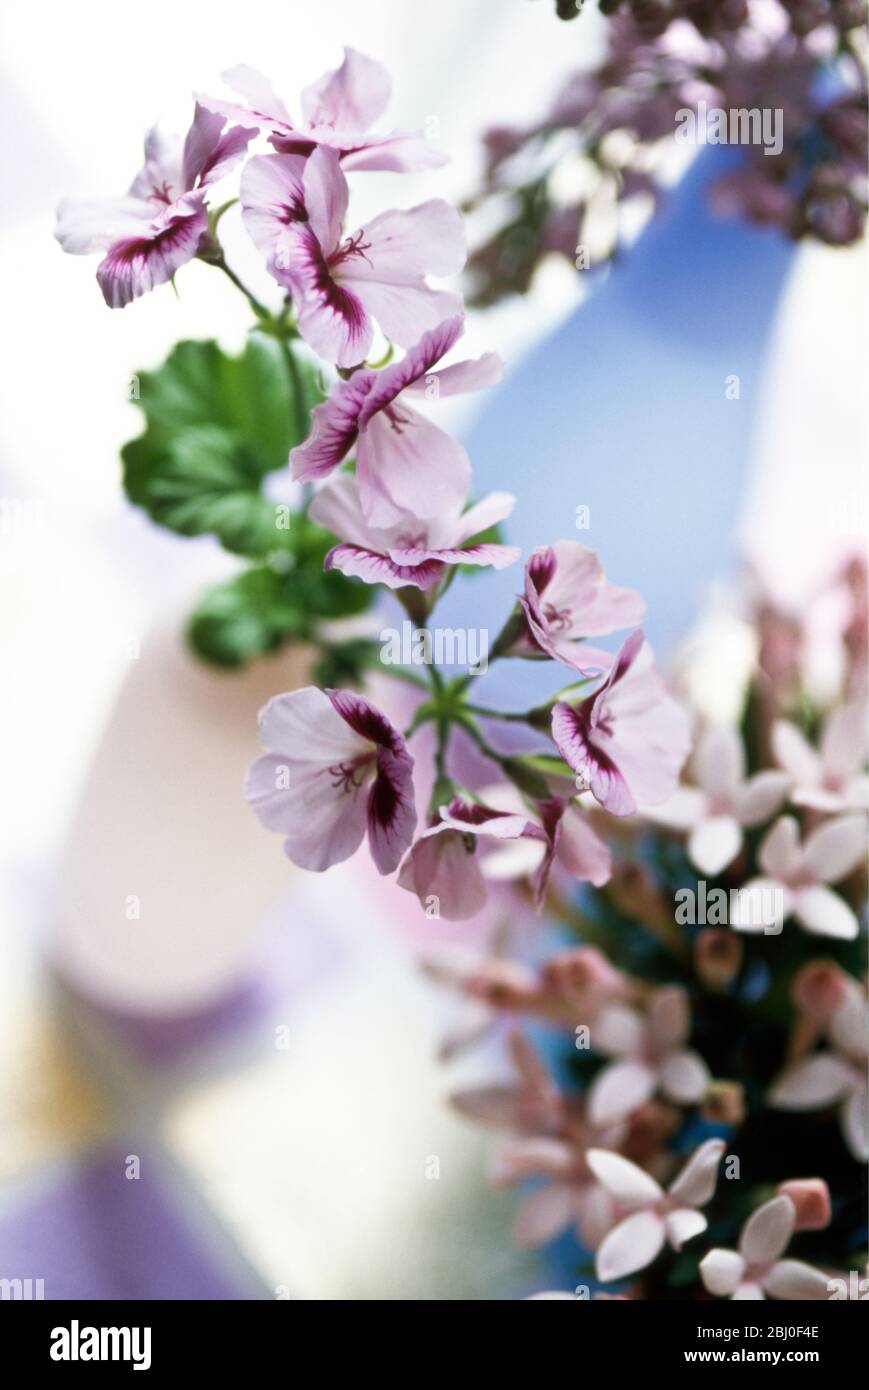 Una bonita disposición de mesa de varias flores malva y rosadas pequeñas con pétalos en delicados jarrones de cristal sobre superficie de checquered - Foto de stock